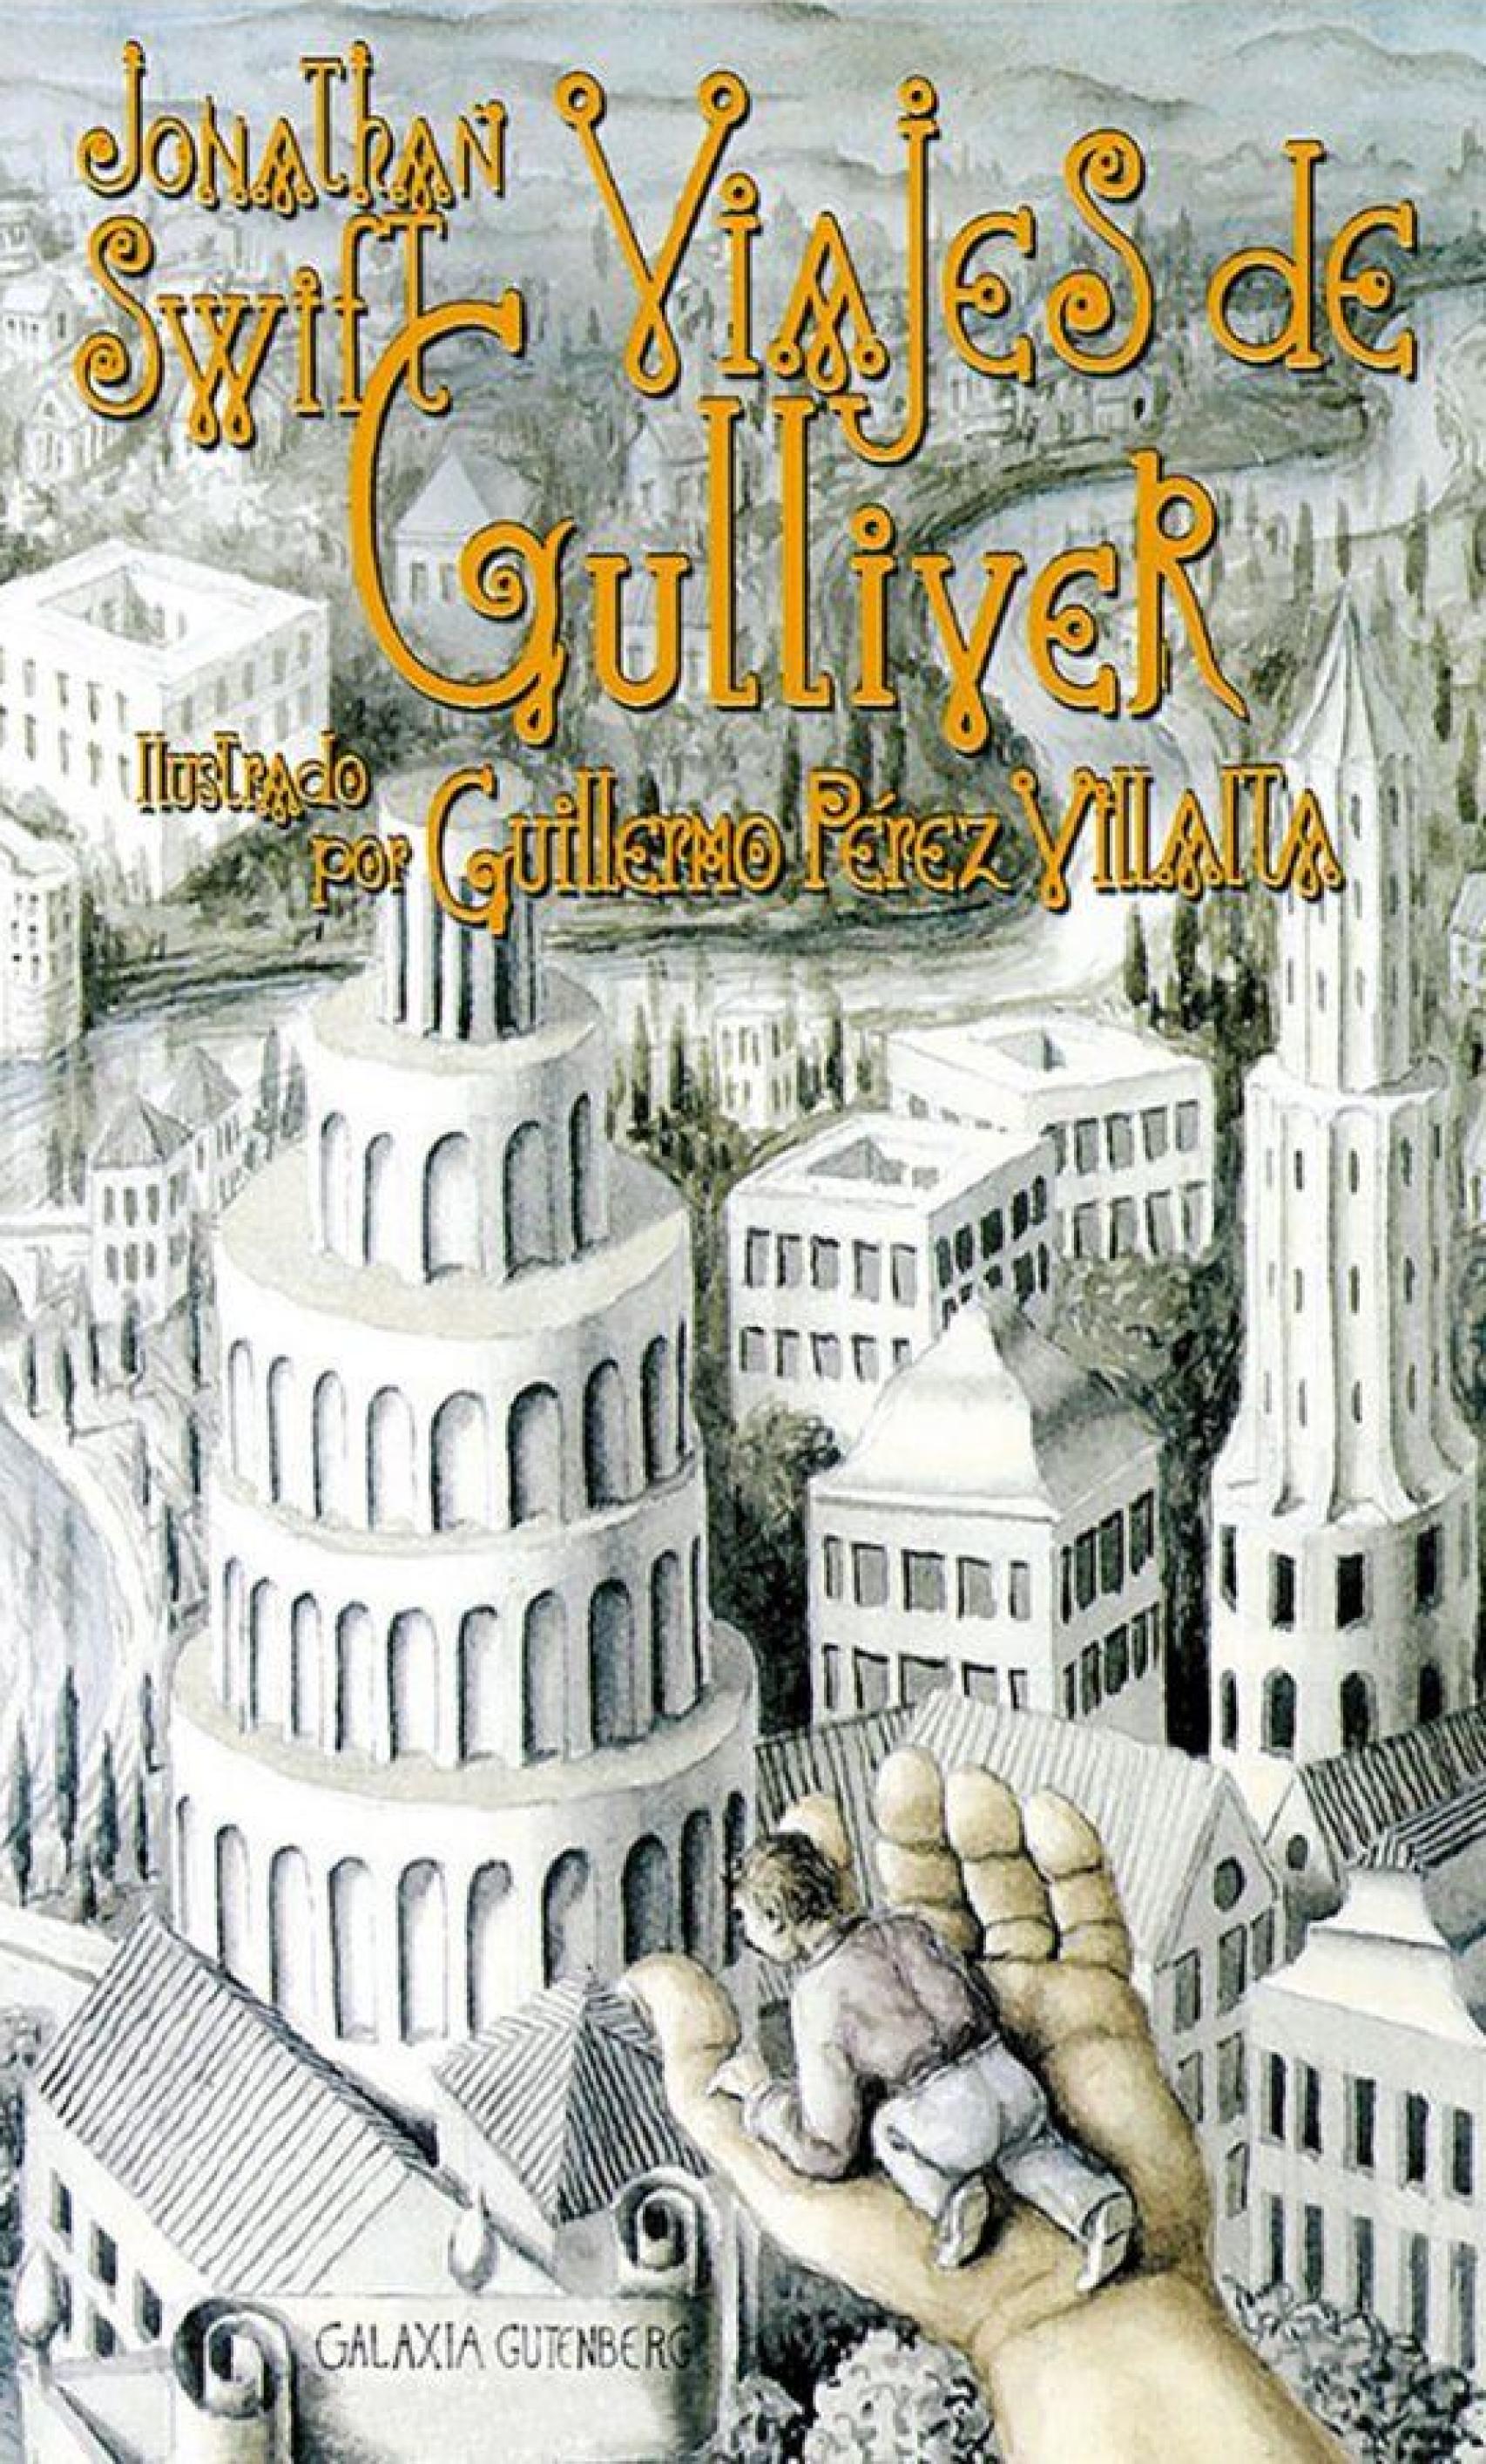 Portada de la edición de Galaxia Gutemberg de 'Los viajes de Gulliver'